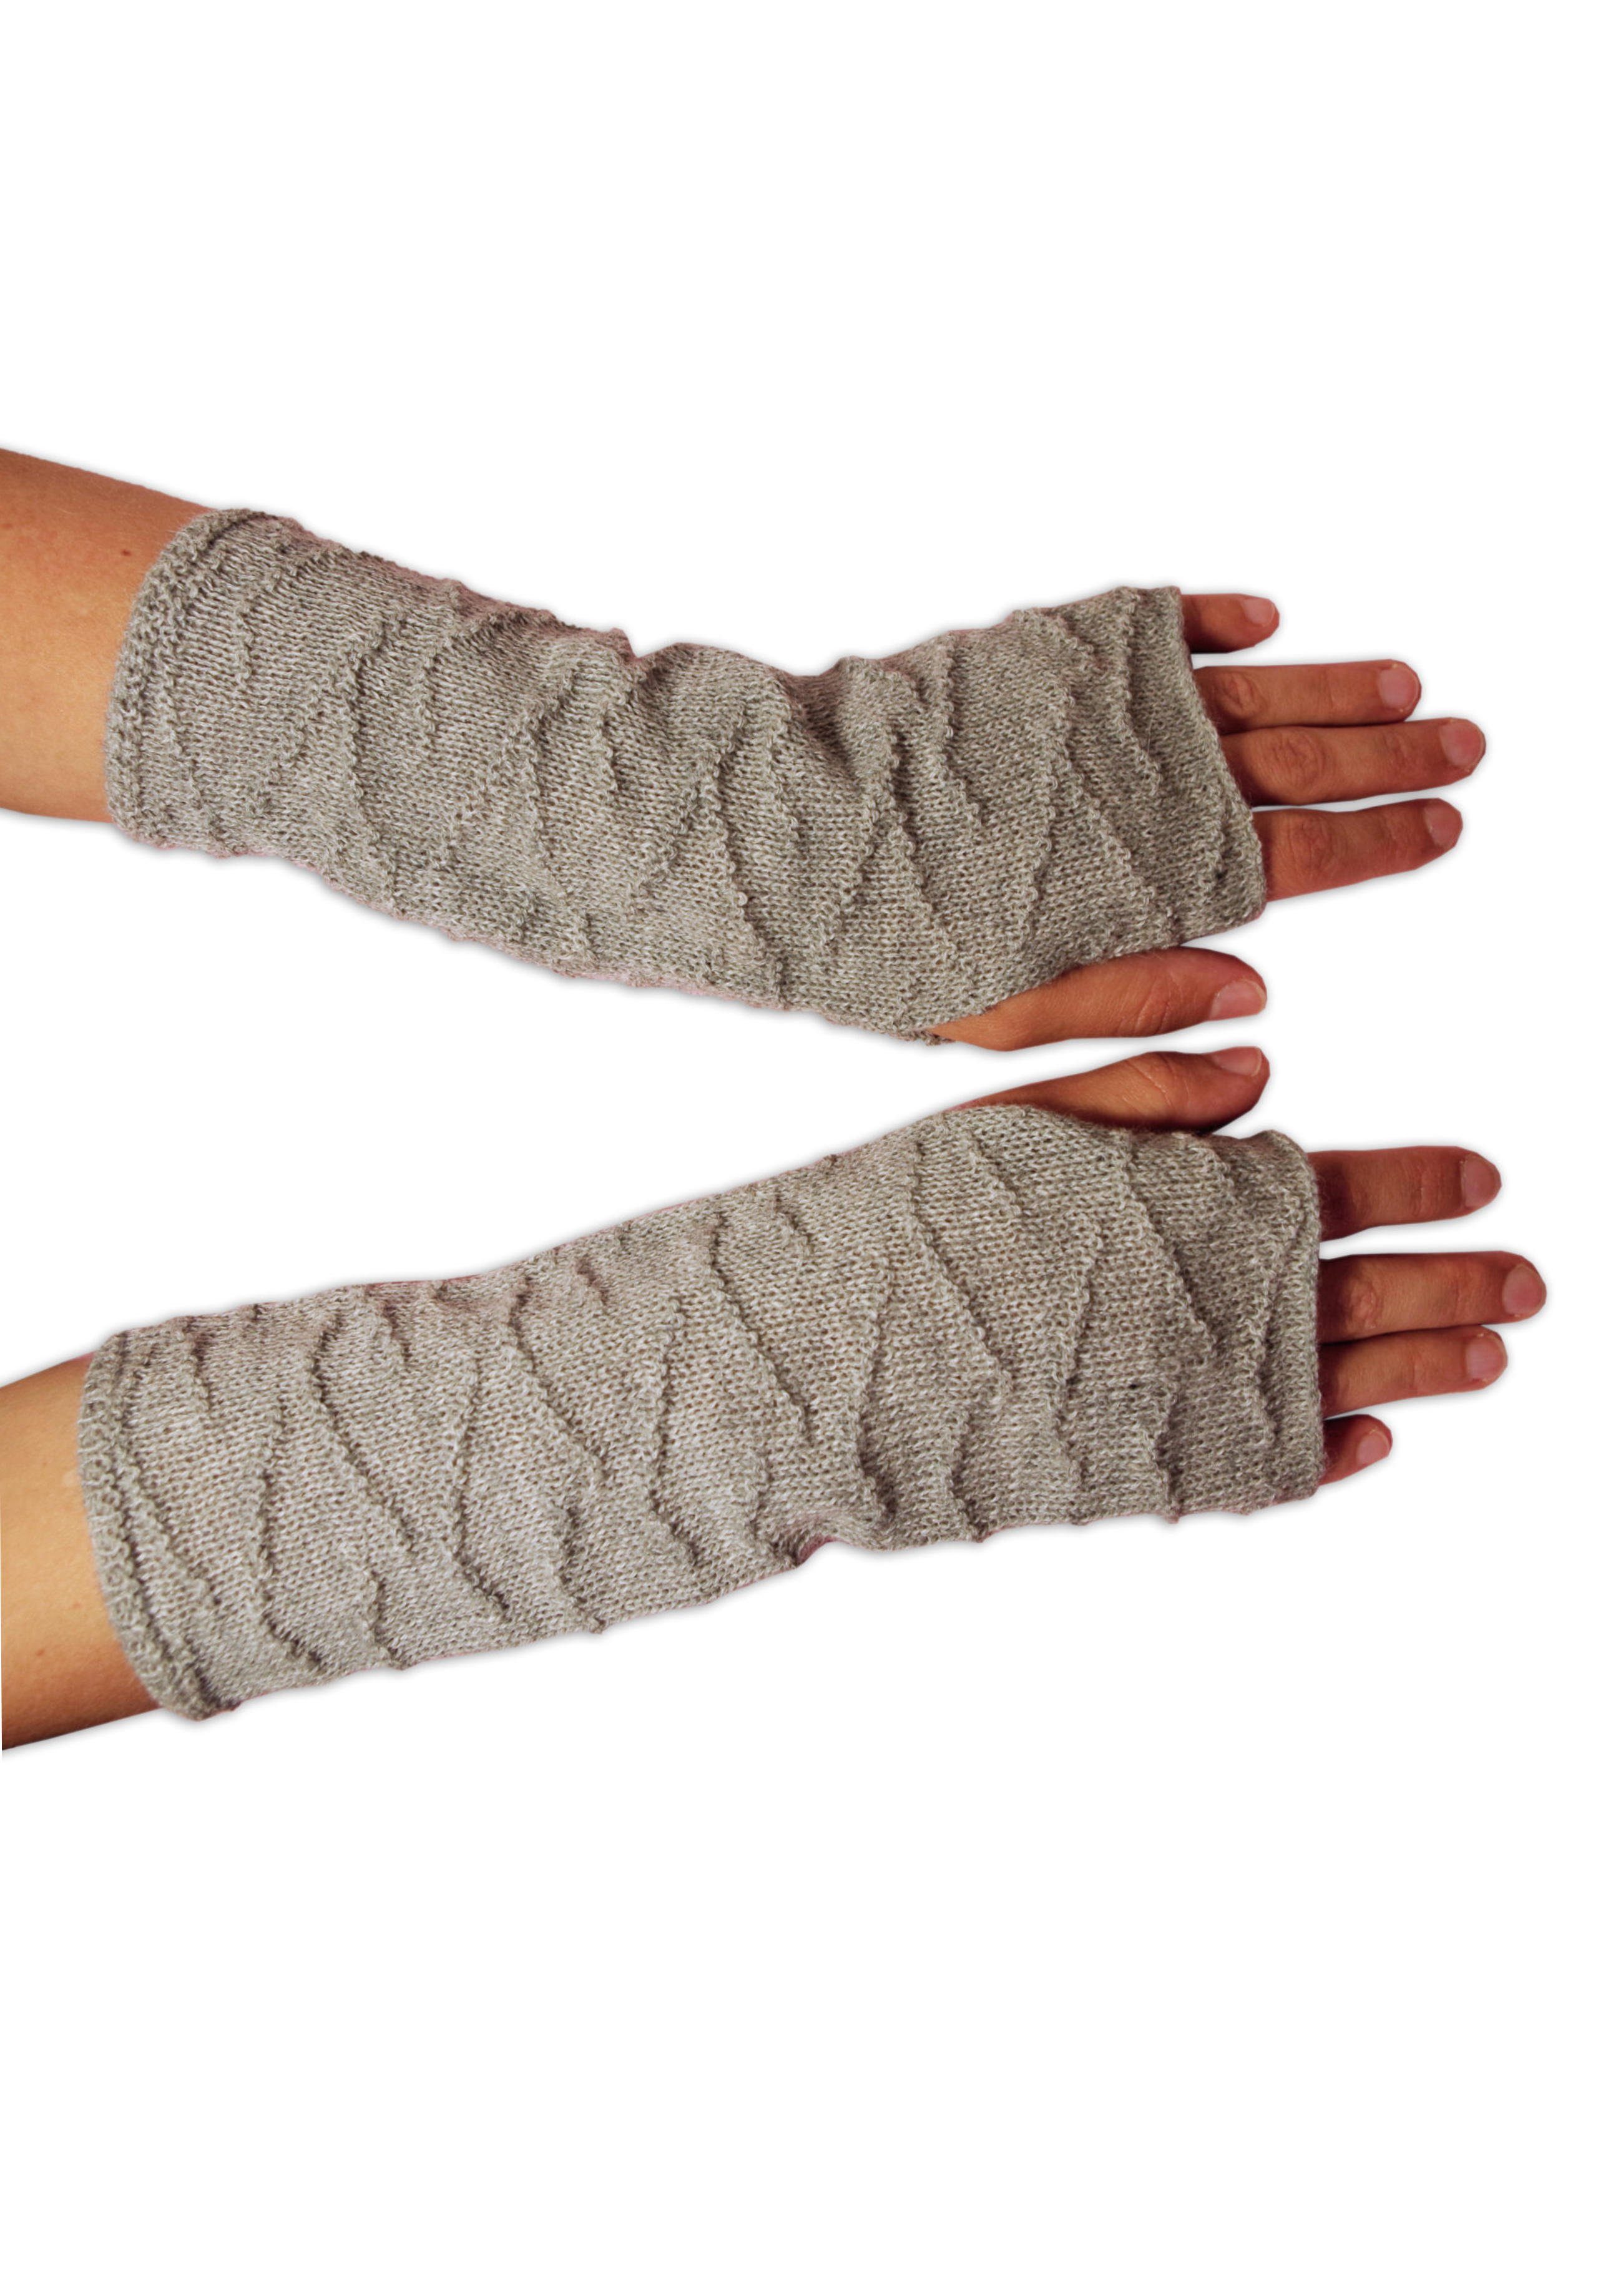 Posh Gear Armstulpen »Alpaka Handstulpen« 100% Alpakawolle online kaufen |  OTTO